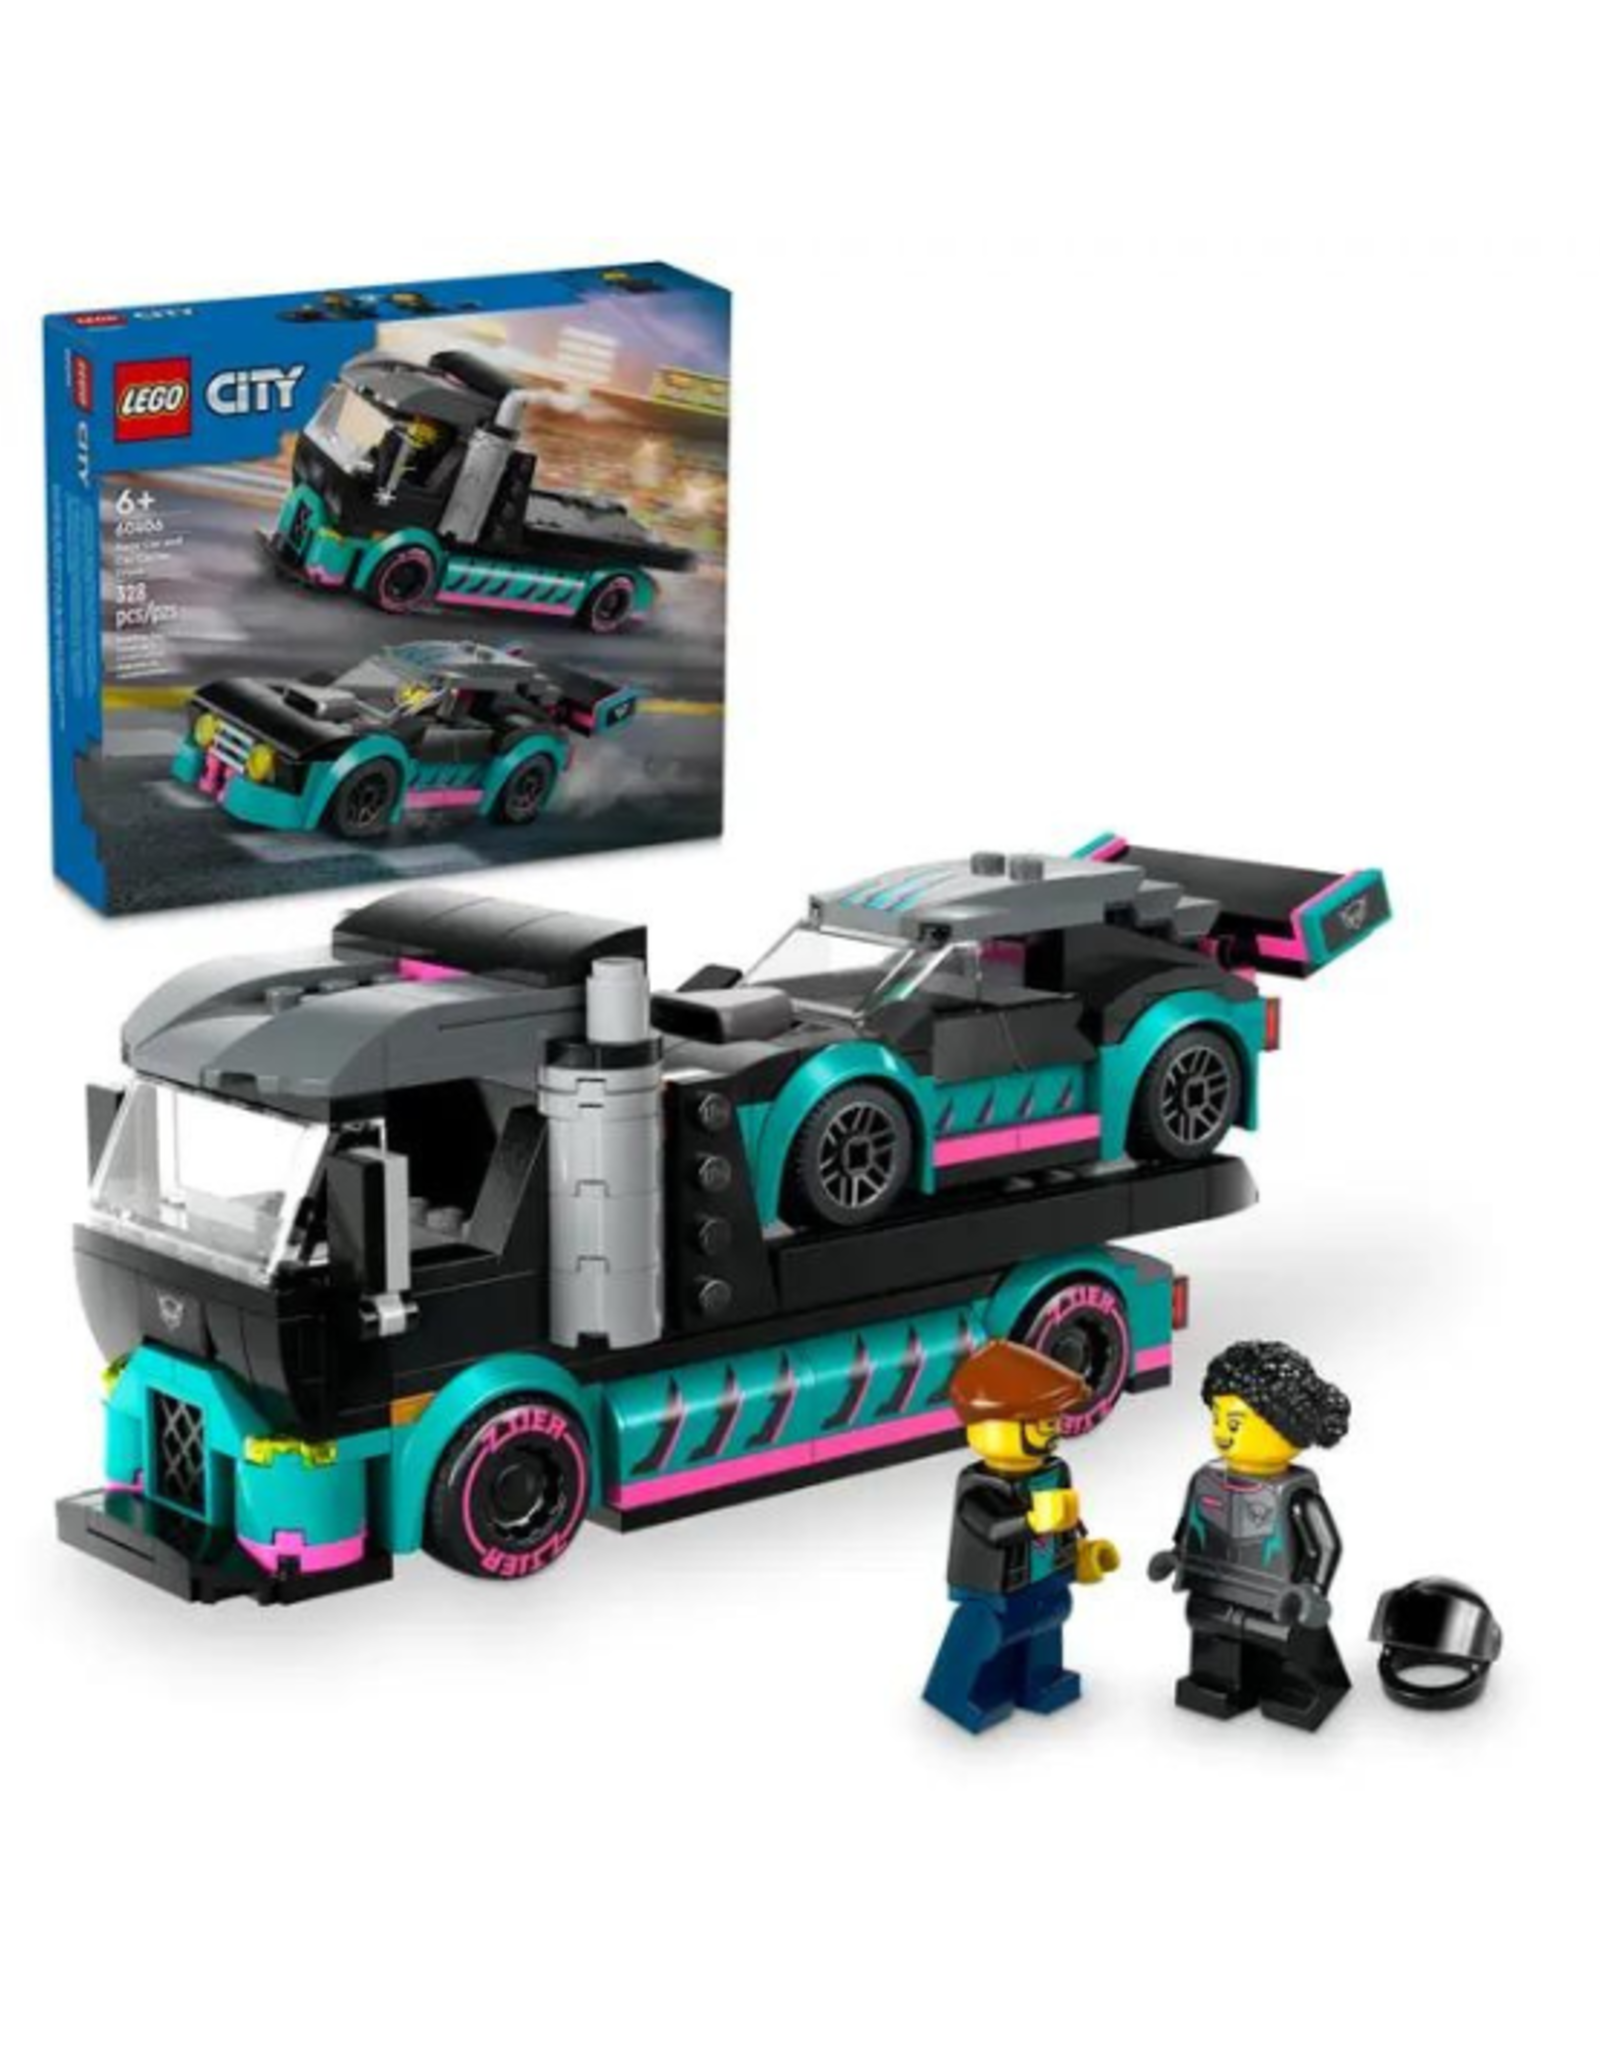 Lego Lego - City - 60406 - Race Car and Car Carrier Truck